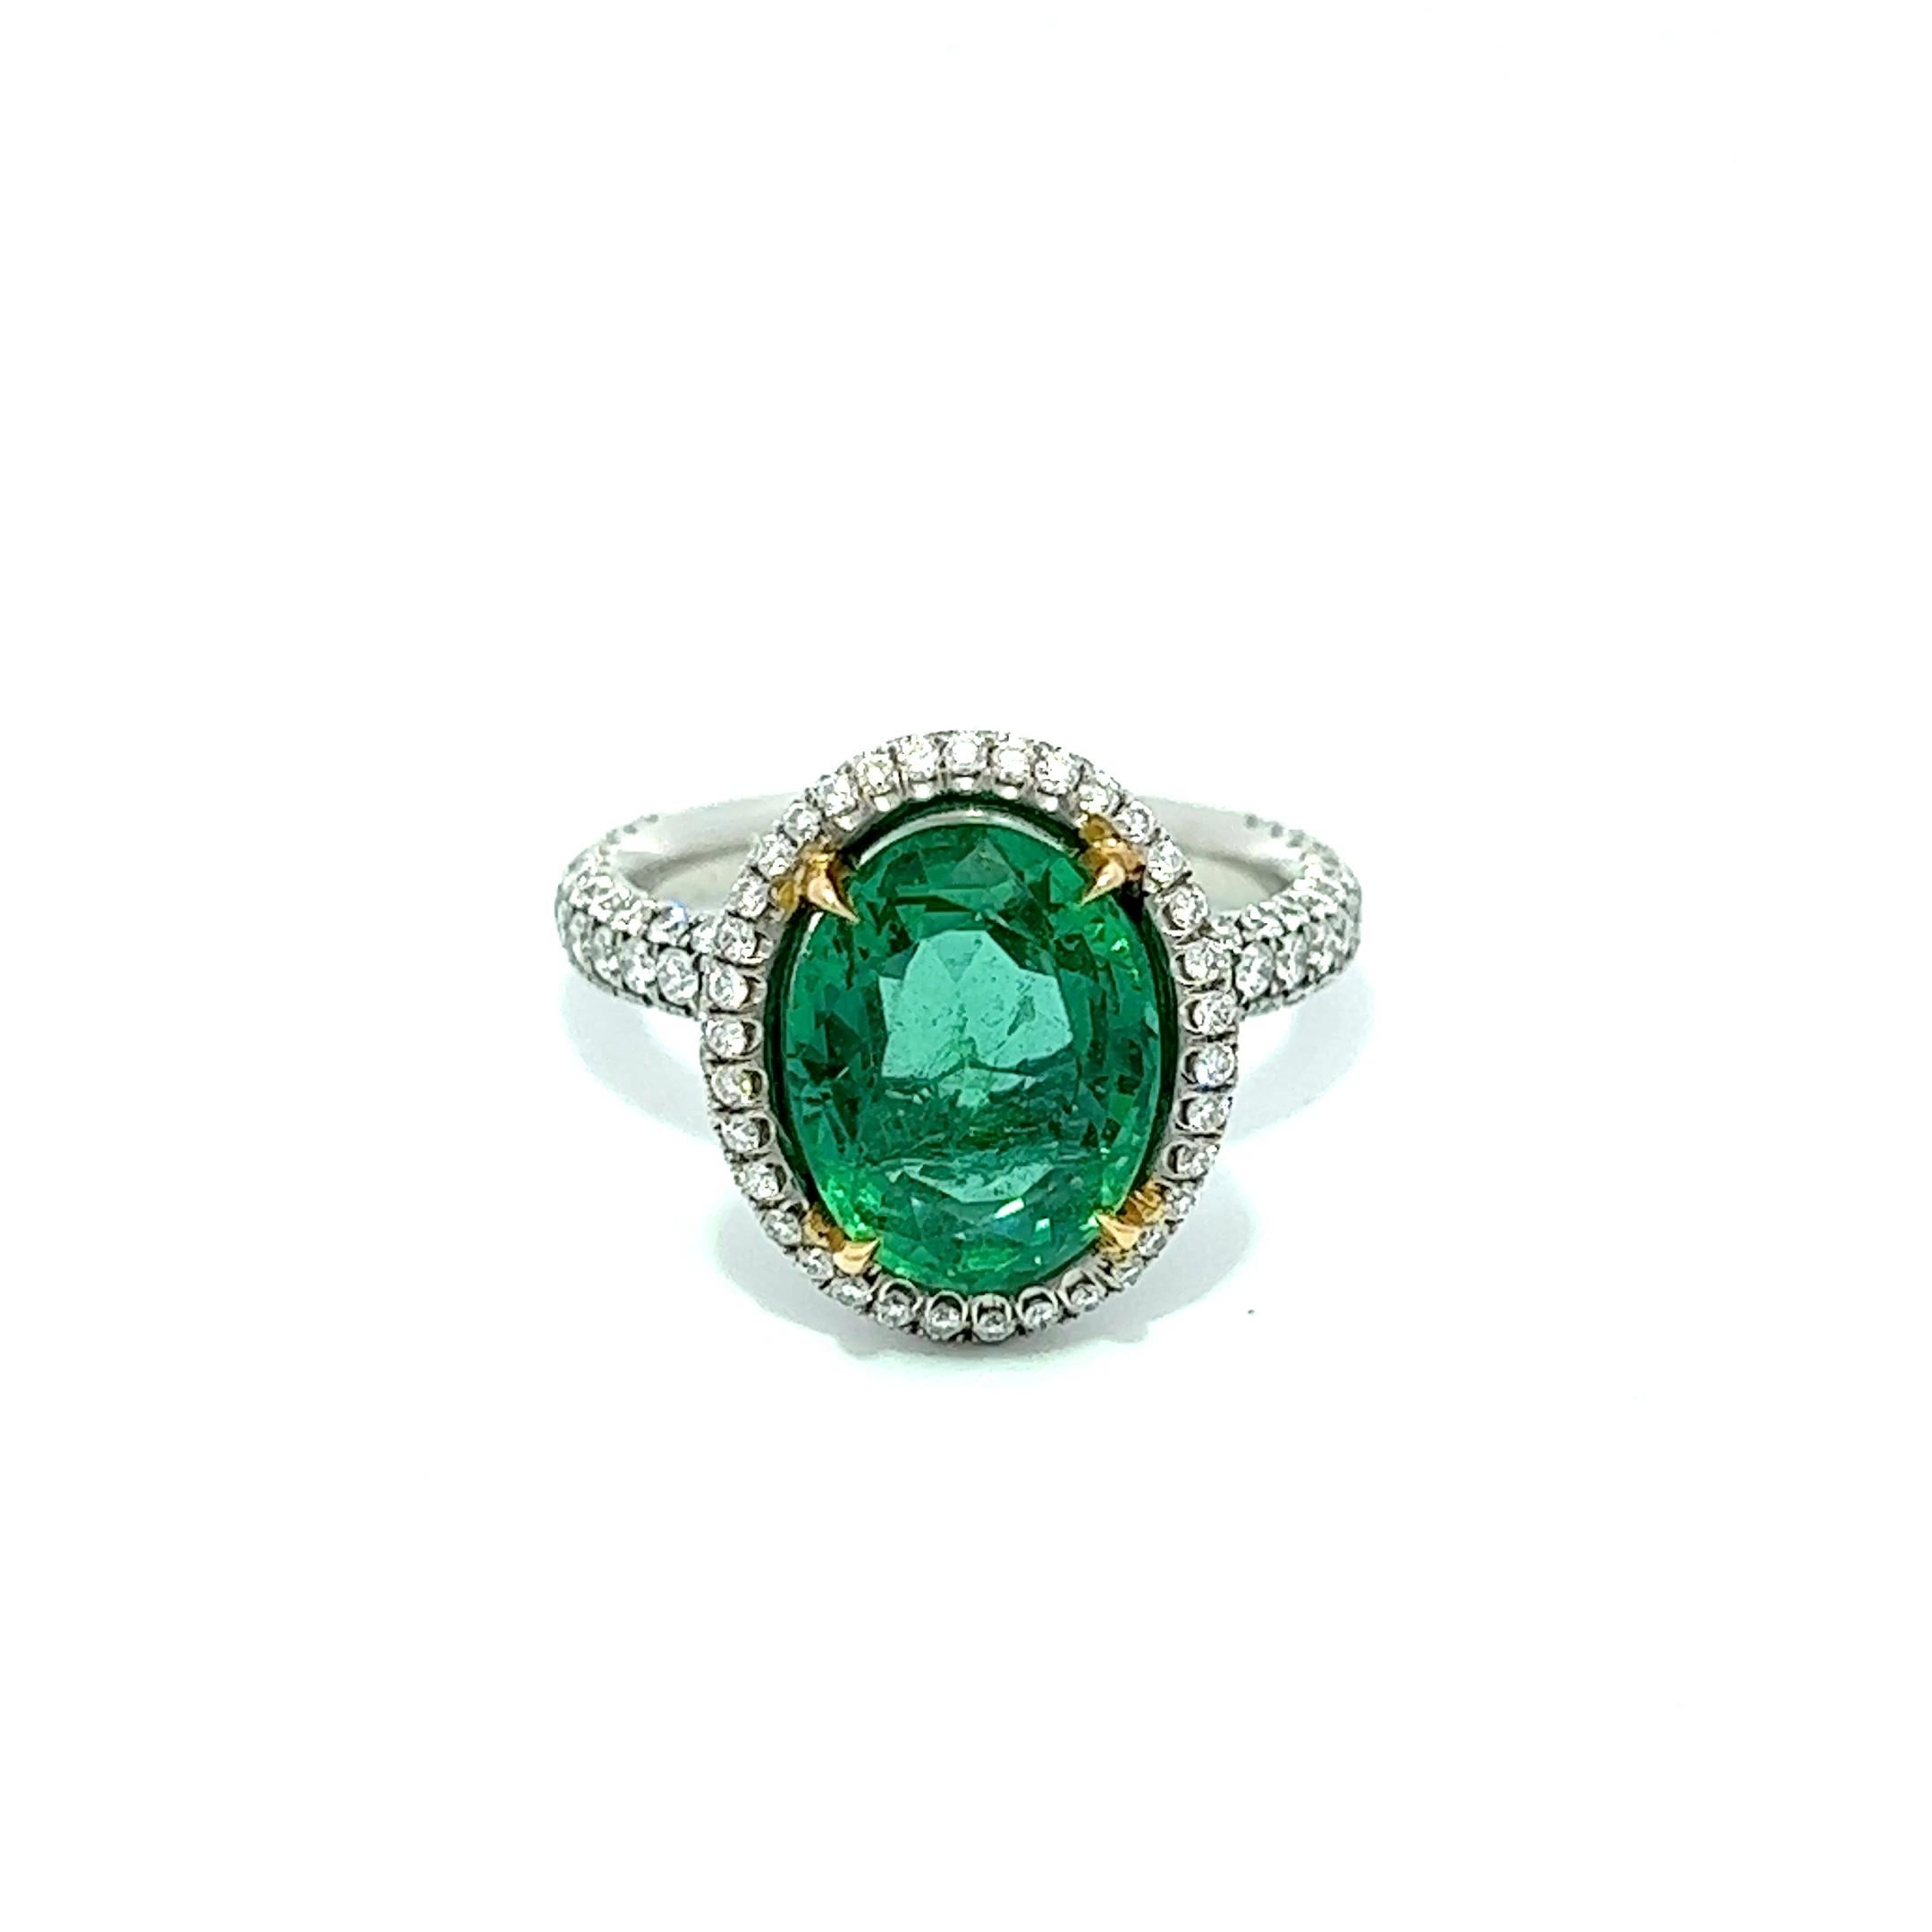 Dieser exquisite Ring besticht durch einen ovalen kolumbianischen Smaragd von 4,91 Karat, der elegant von runden Diamanten umgeben ist, die sich auf beiden Seiten allmählich zur Hälfte verjüngen. Der Smaragd ist in Platin gefasst, was ein Maximum an